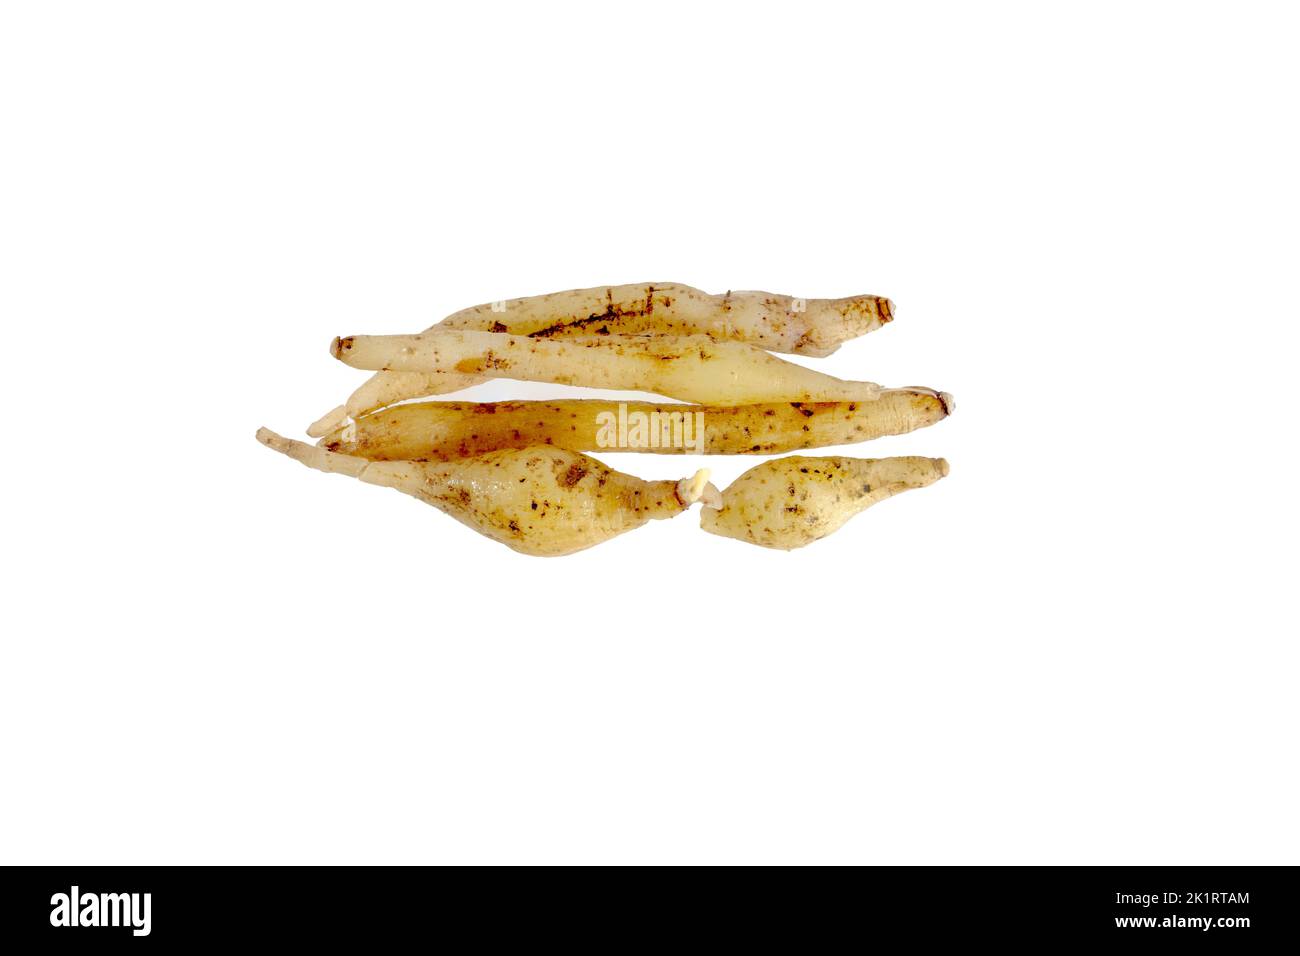 Jengibre chino, raíz de dedo, aislado sobre fondo blanco, puesta plana Foto de stock